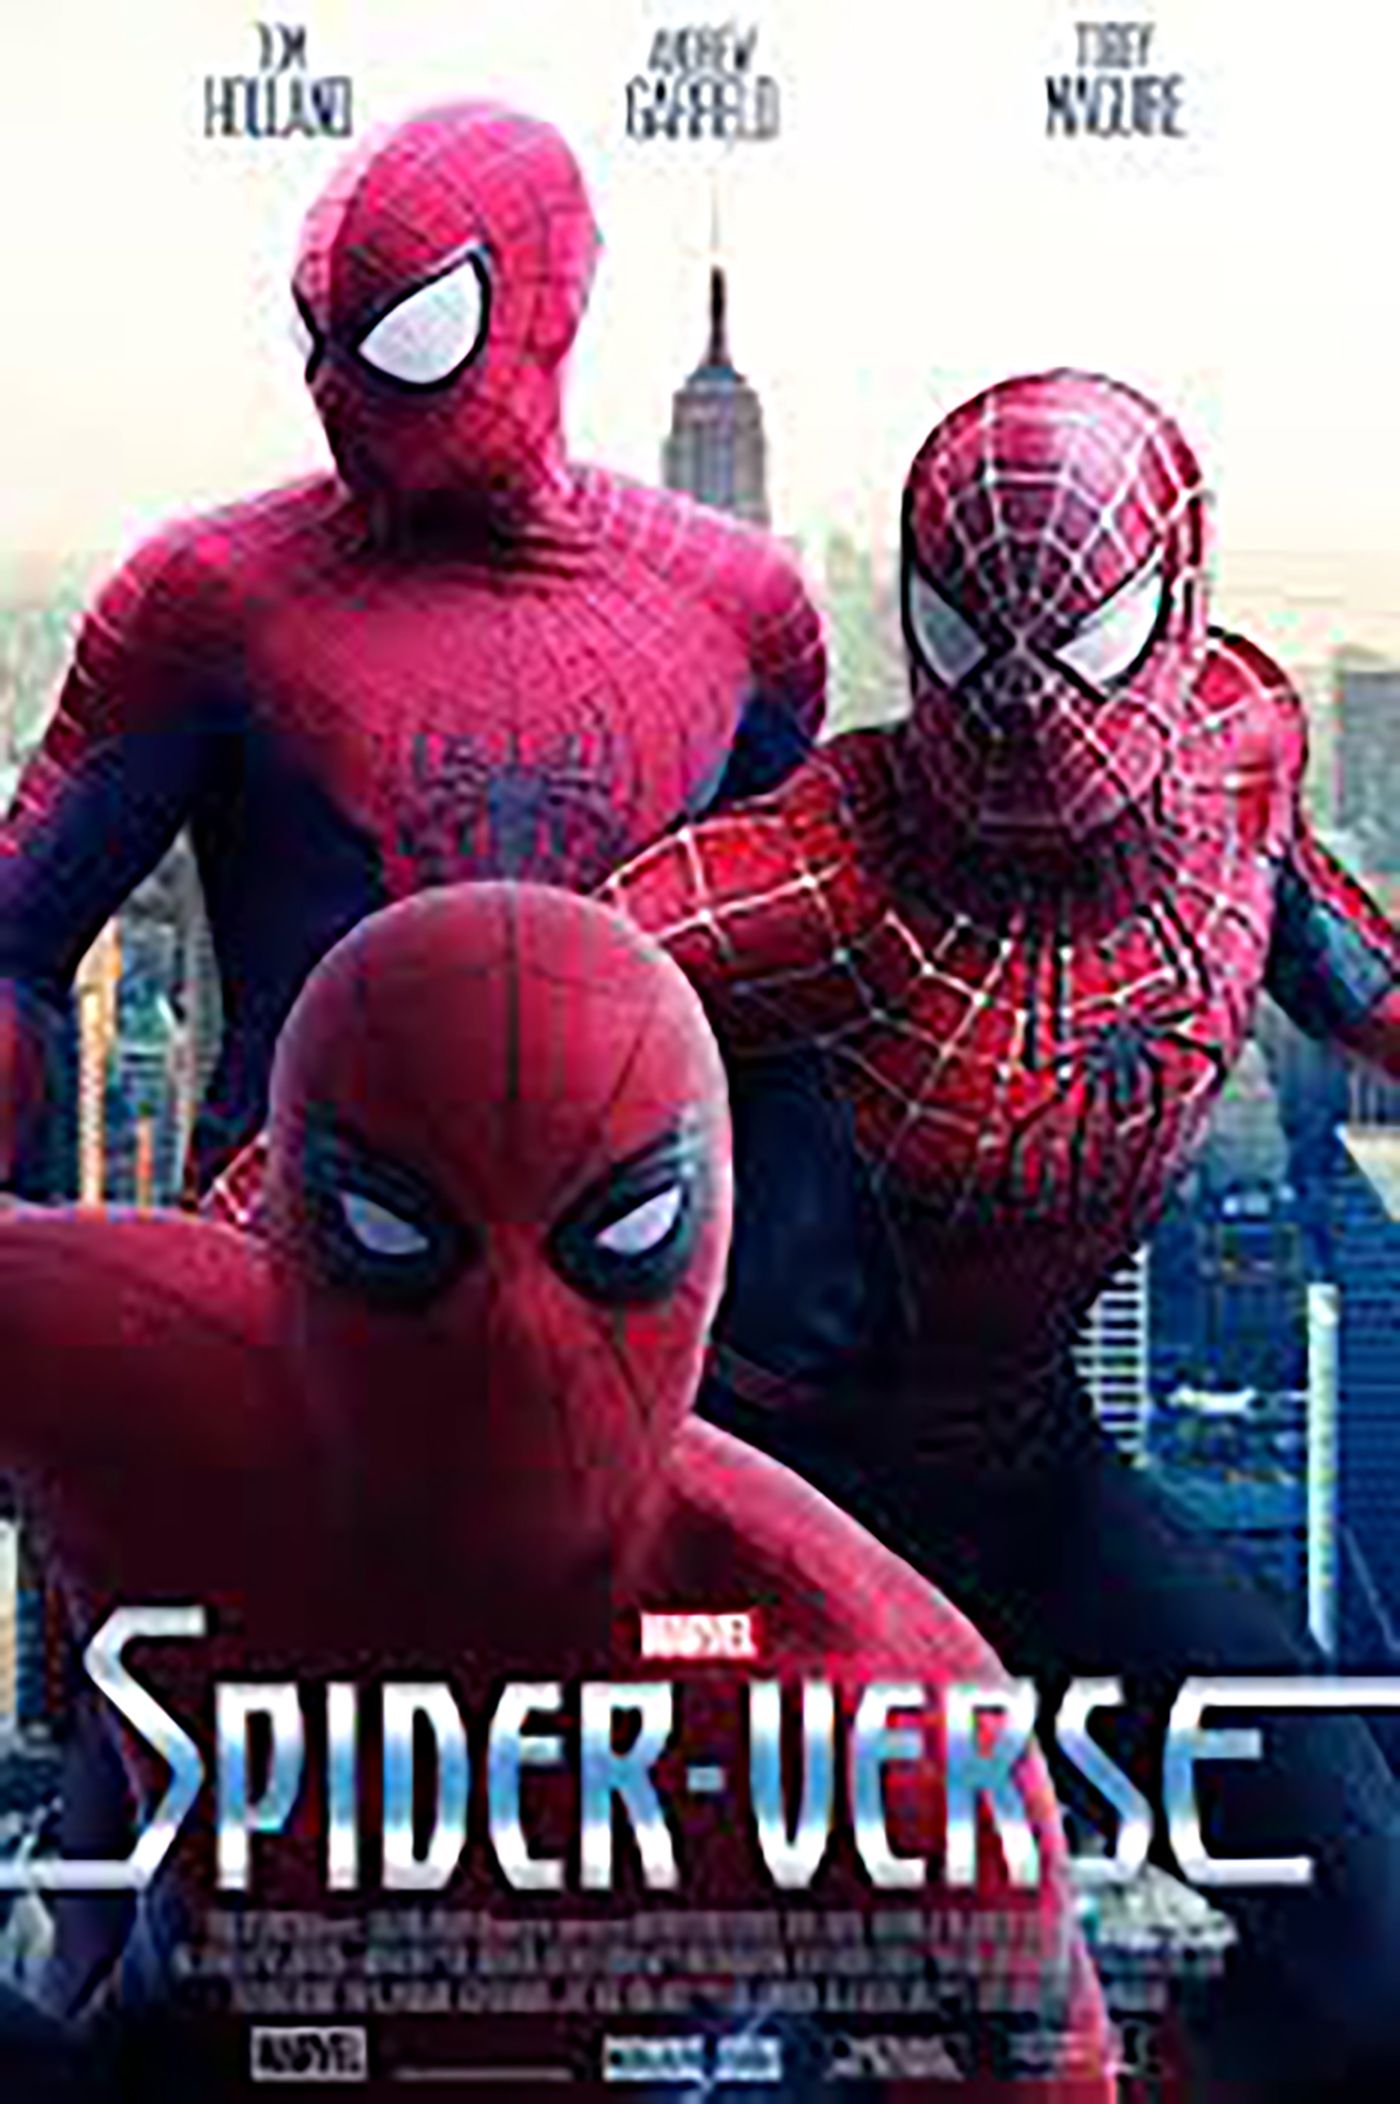 Spider-Man Into the Spdier-Verse